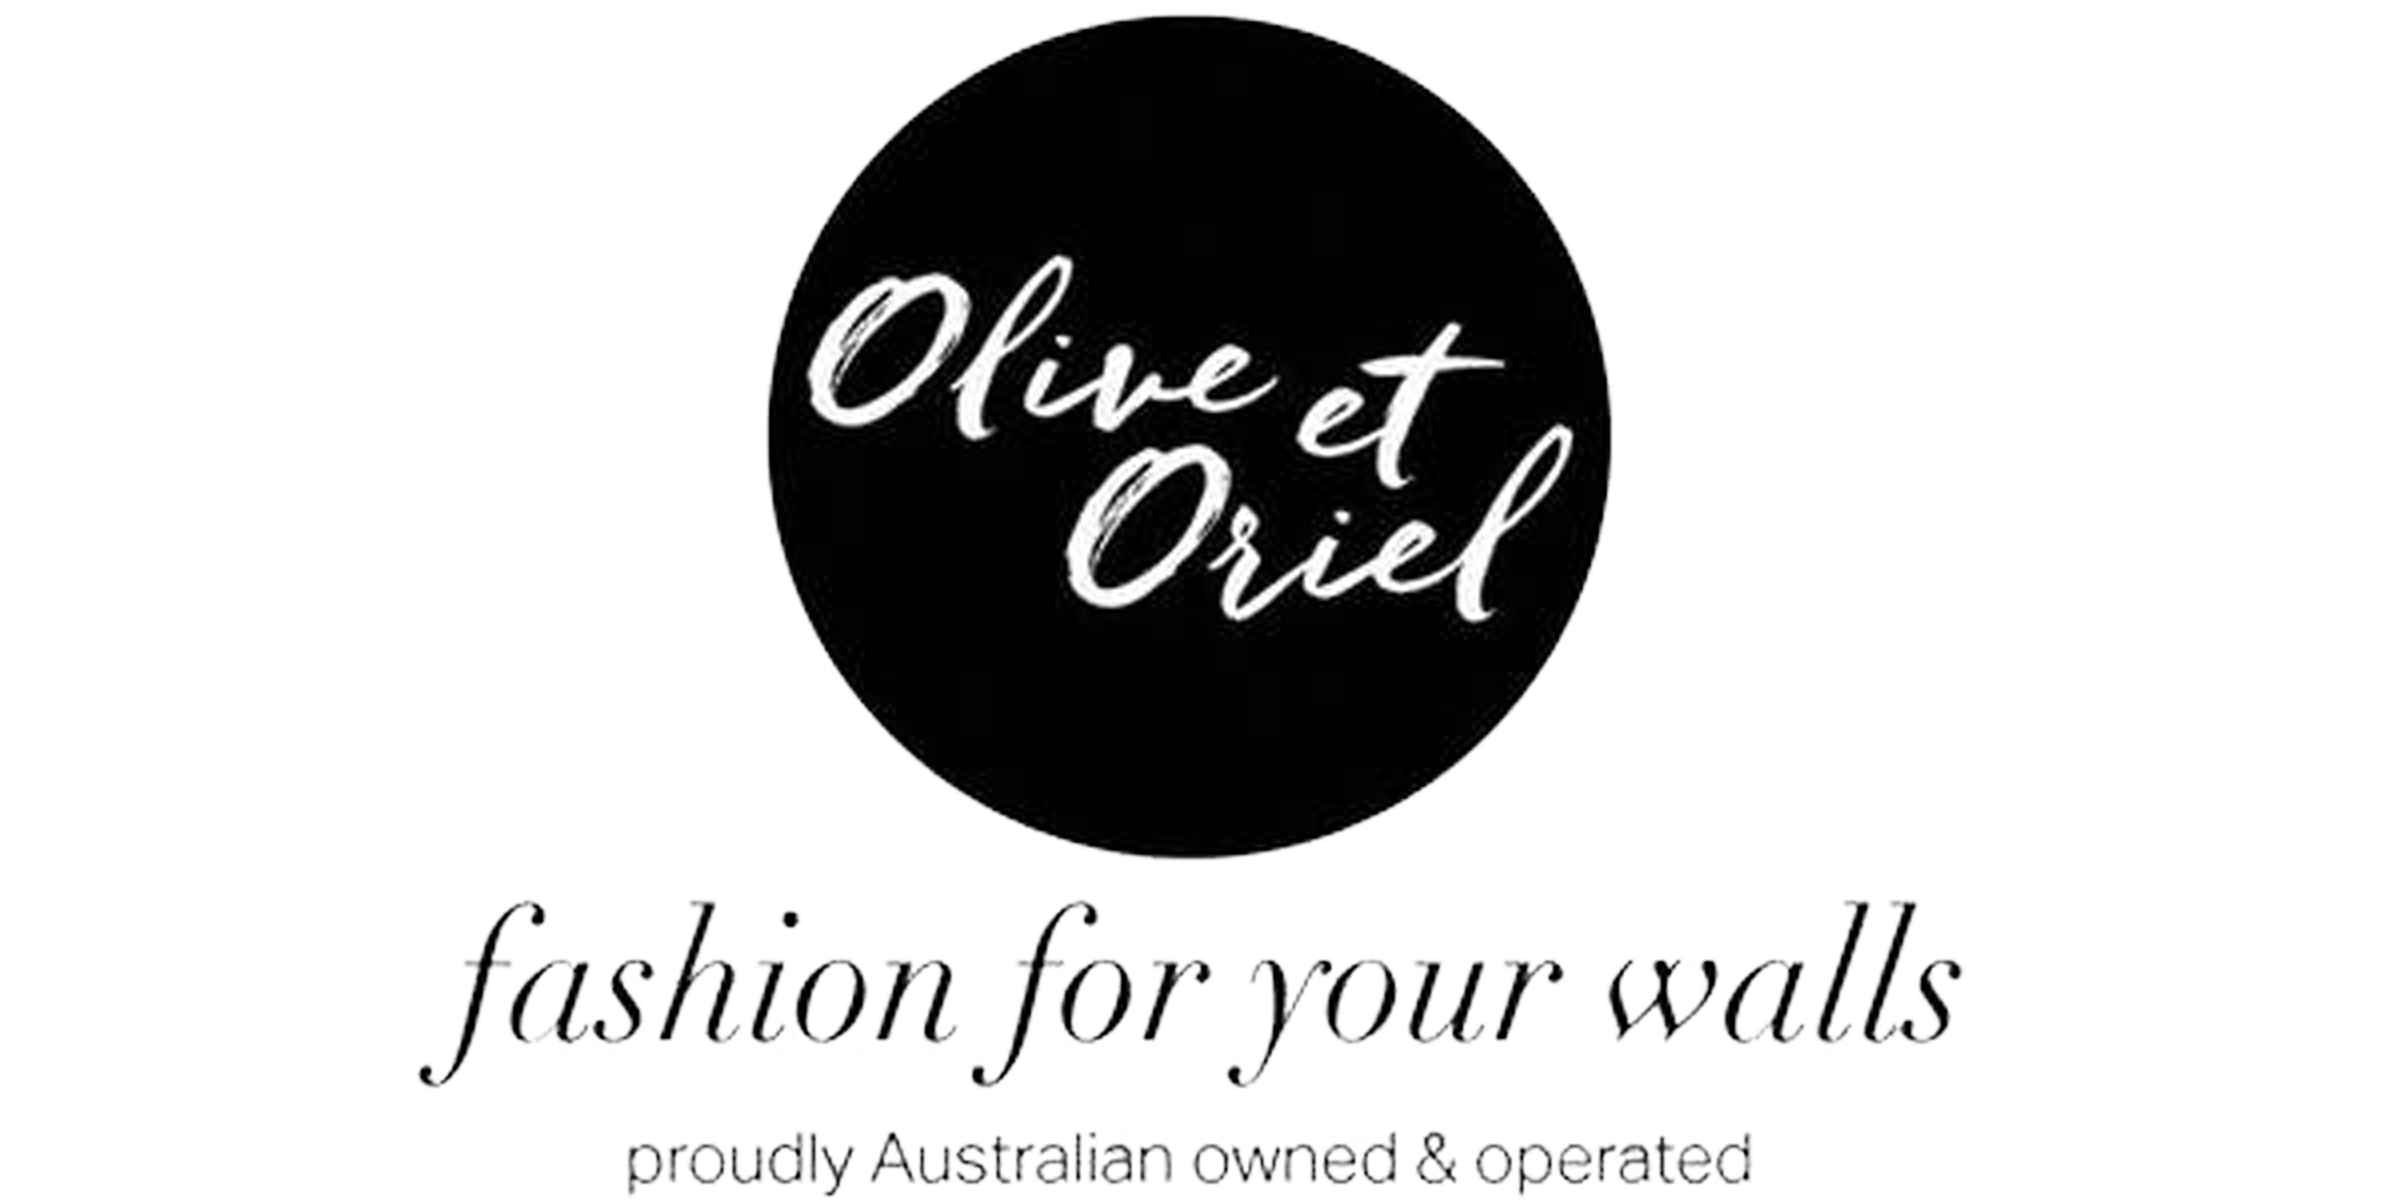 Olive et Oriel